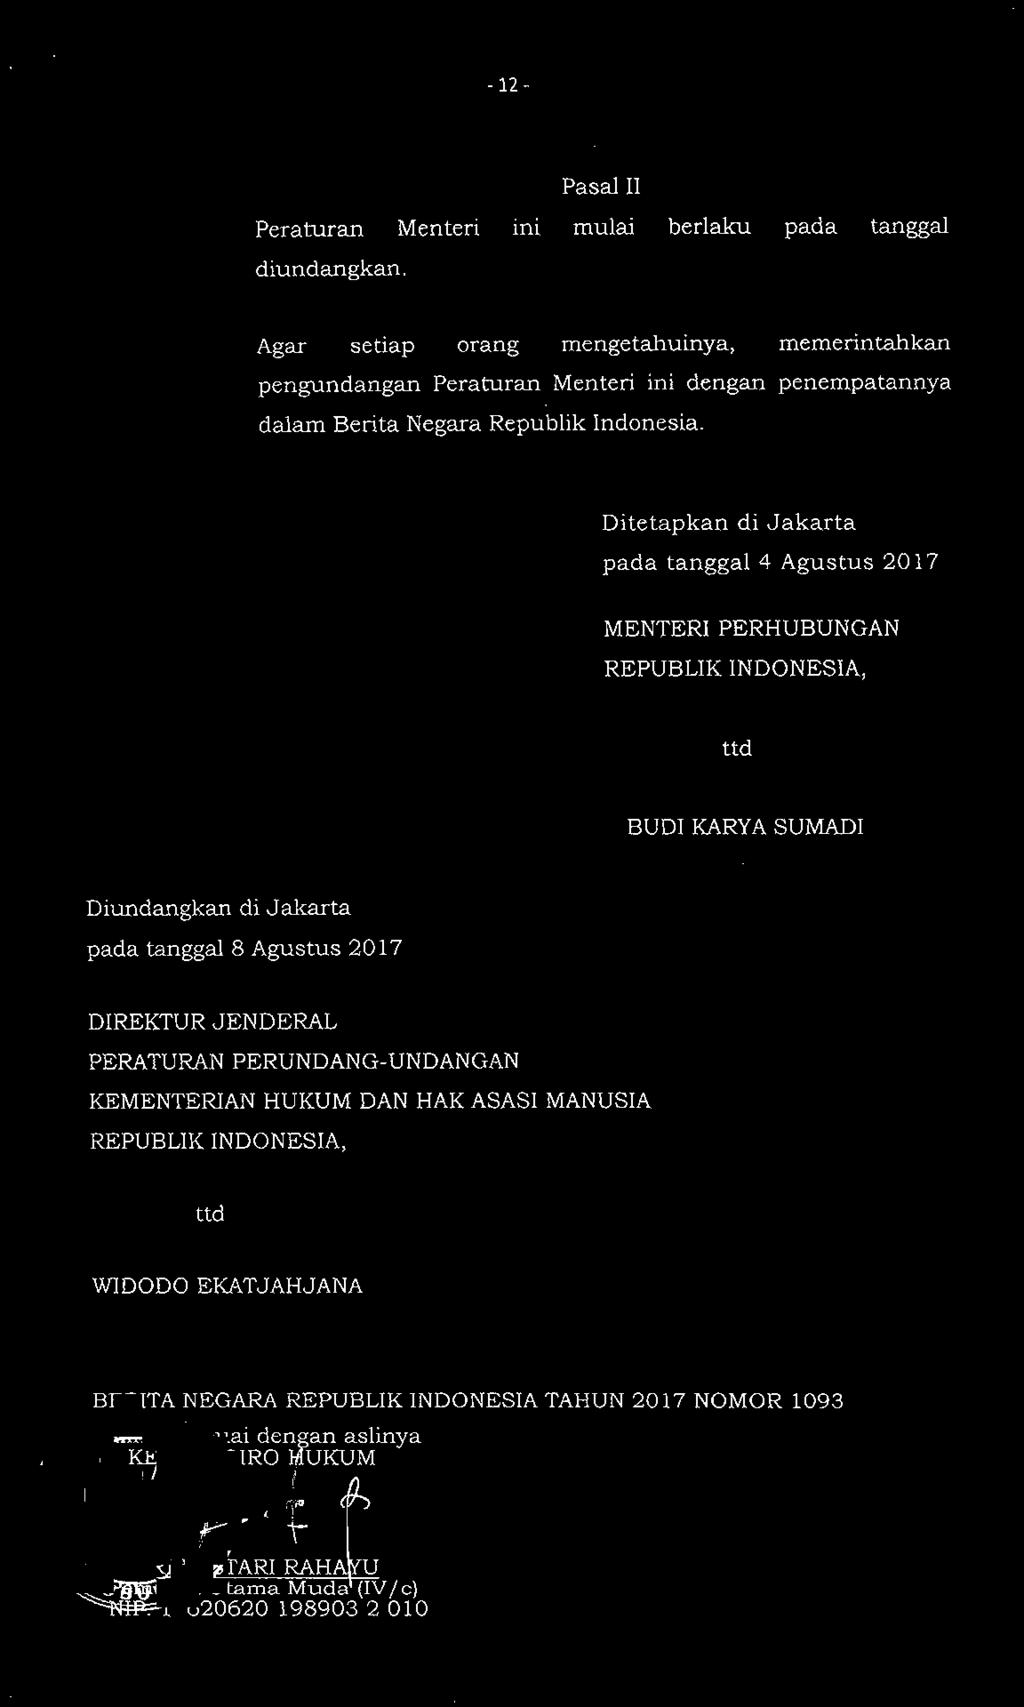 Ditetapkan di Jakarta pada tanggal 4 Agustus 2017 MENTERI PERHUBUNGAN REPUBLIK INDONESIA, ttd BUDI KARYA SUMADI Diundangkan di Jakarta pada tanggal 8